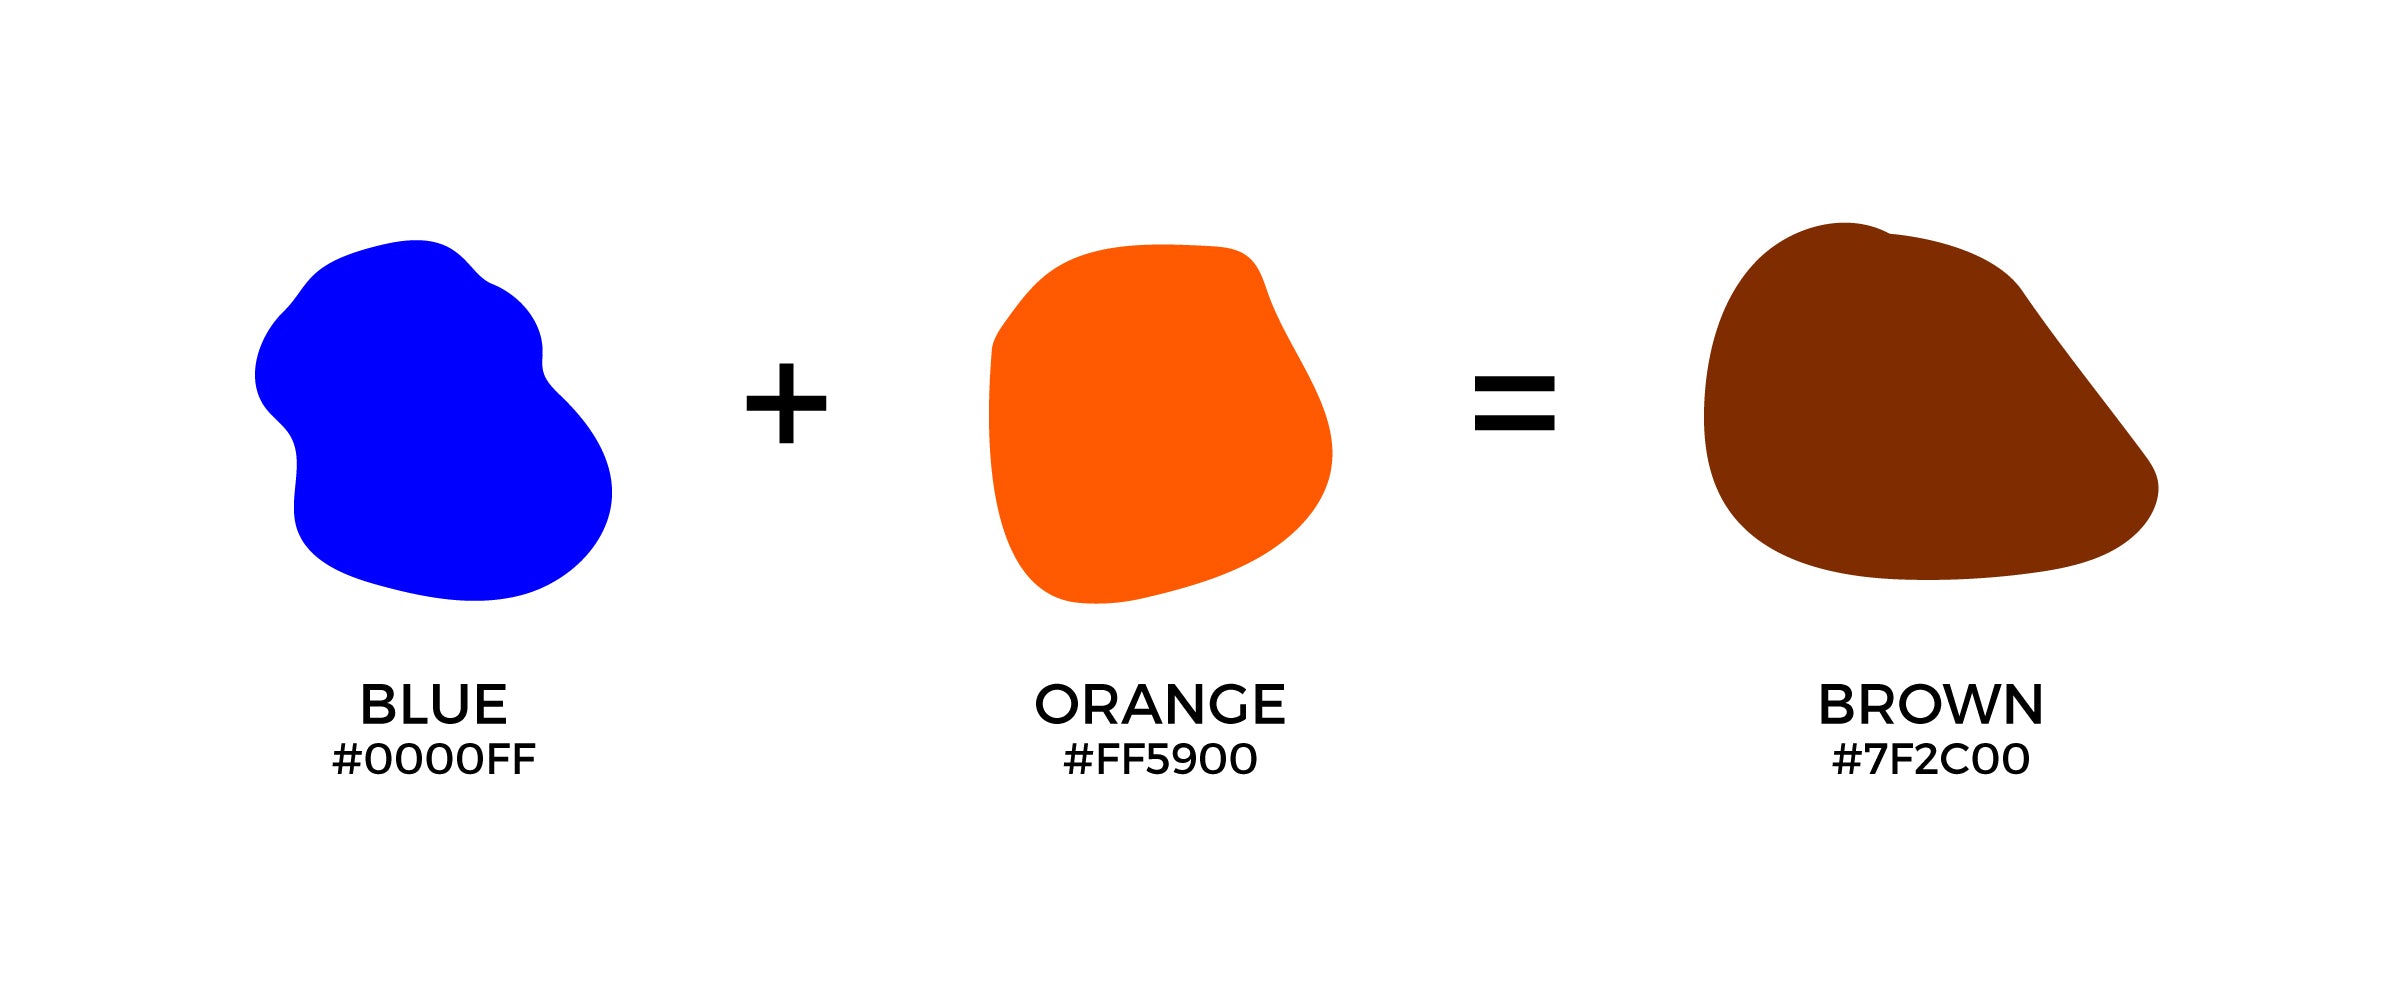 Hvilken en skak Intermediate What Color Does Blue and Orange Make When Mixed Together? – CreativeBooster